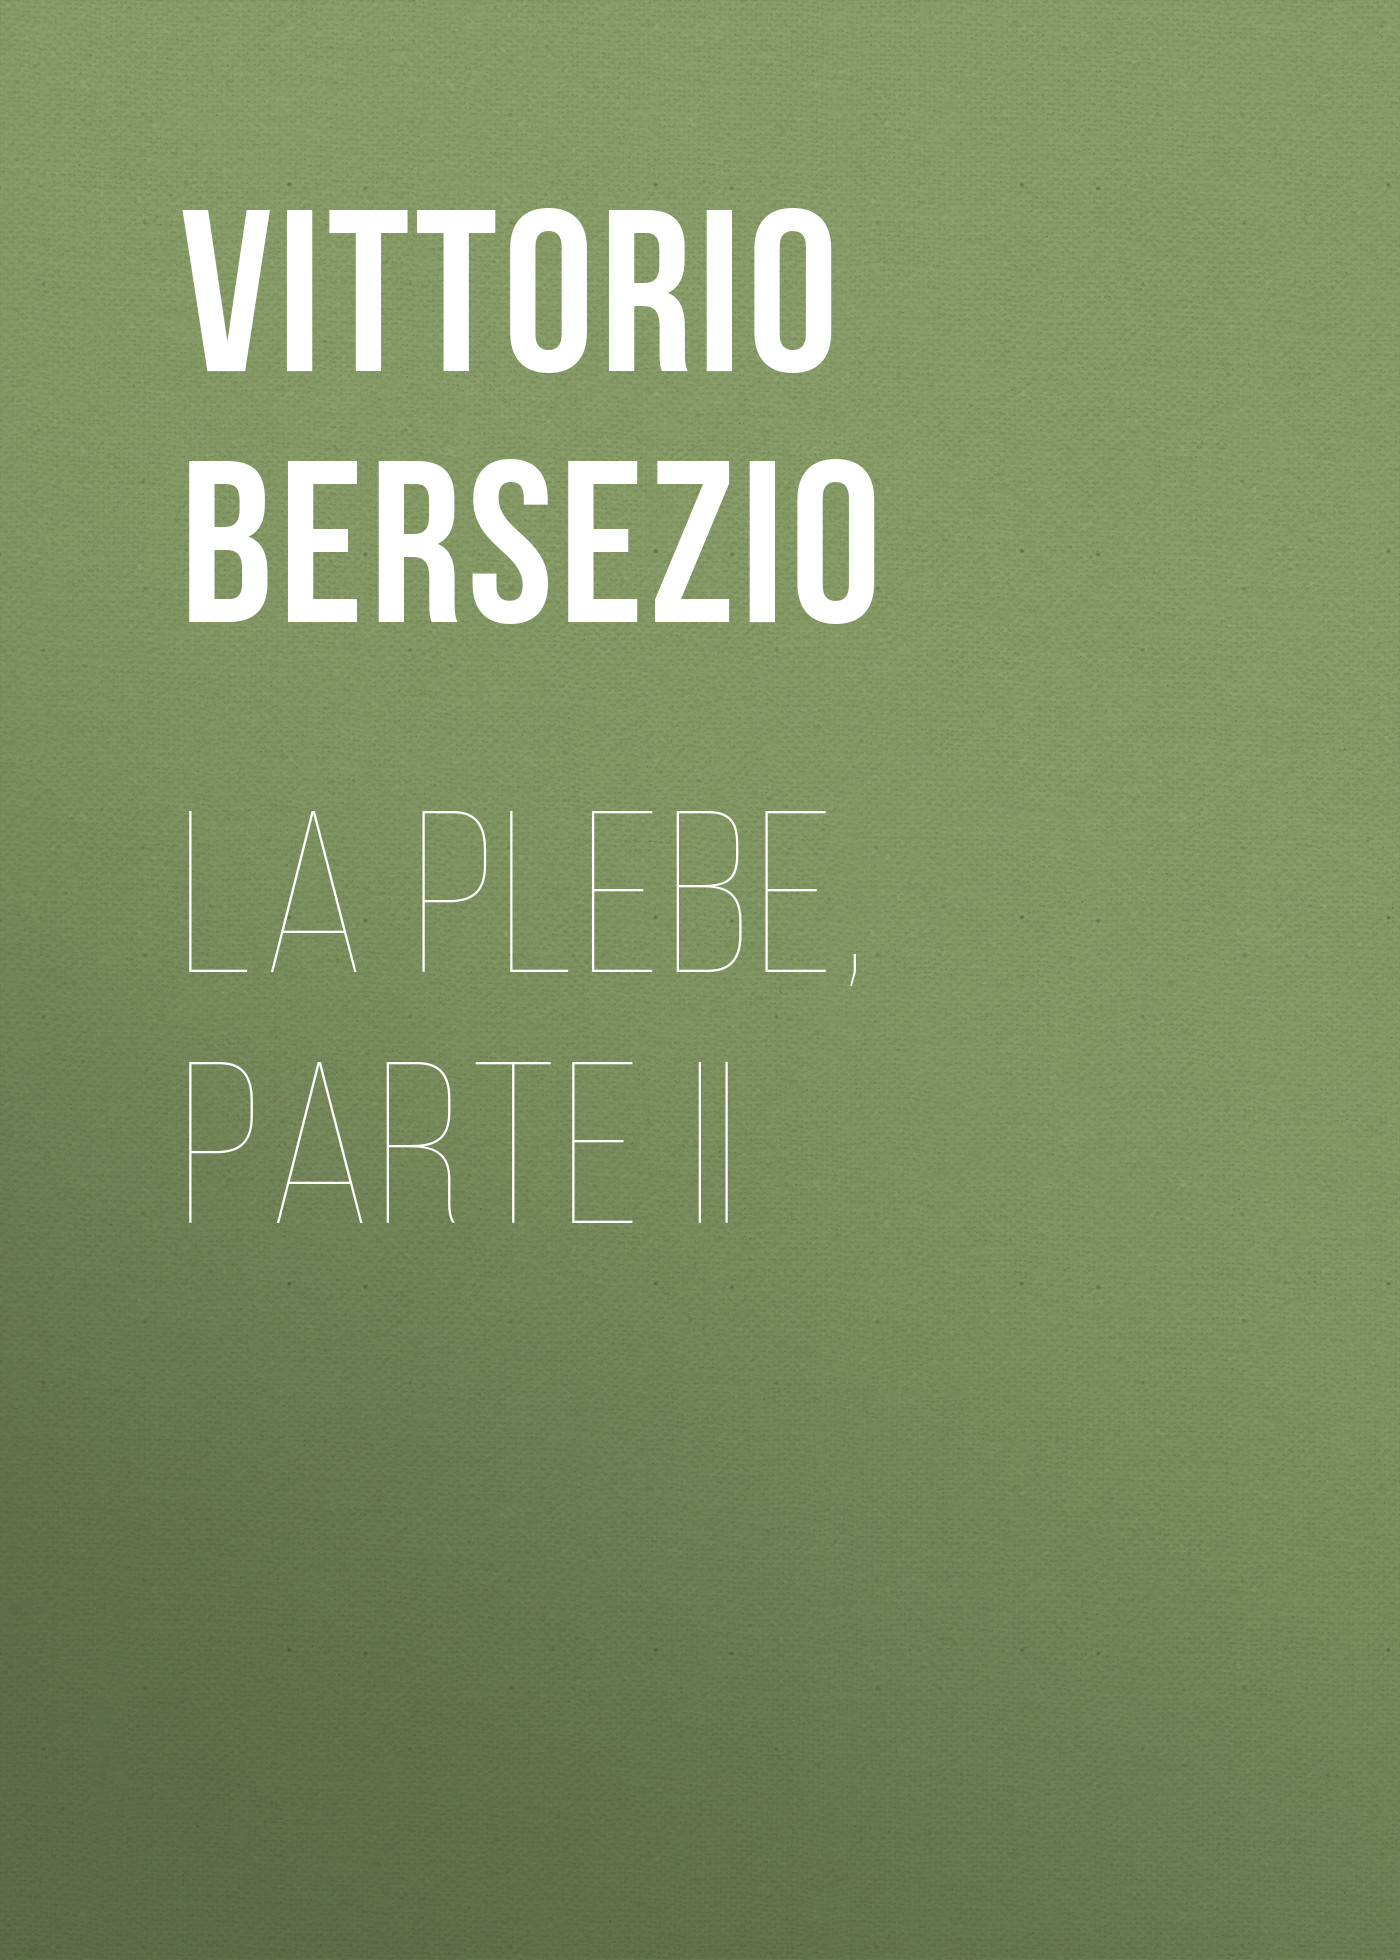 Книга La plebe, parte II из серии , созданная Vittorio Bersezio, может относится к жанру Зарубежная старинная литература, Зарубежная классика. Стоимость электронной книги La plebe, parte II с идентификатором 24178260 составляет 0 руб.